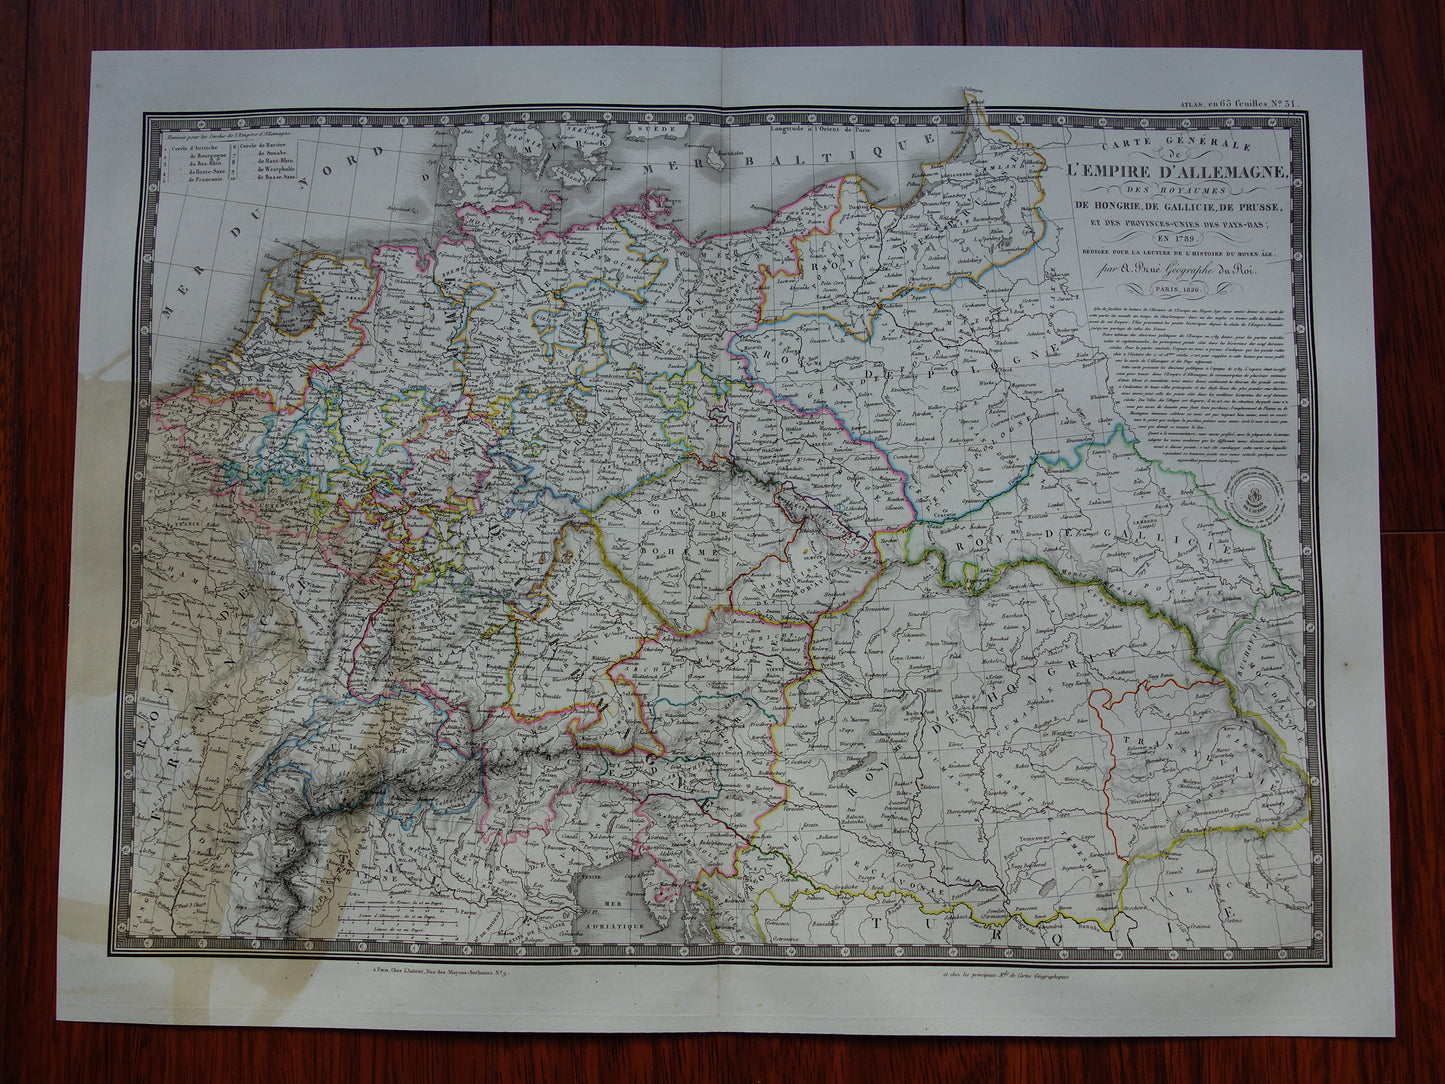 DUITSLAND grote oude Franse kaart van Duitse Rijk in 1789 beschadigde originele antieke handgekleurde landkaart poster uit 1826